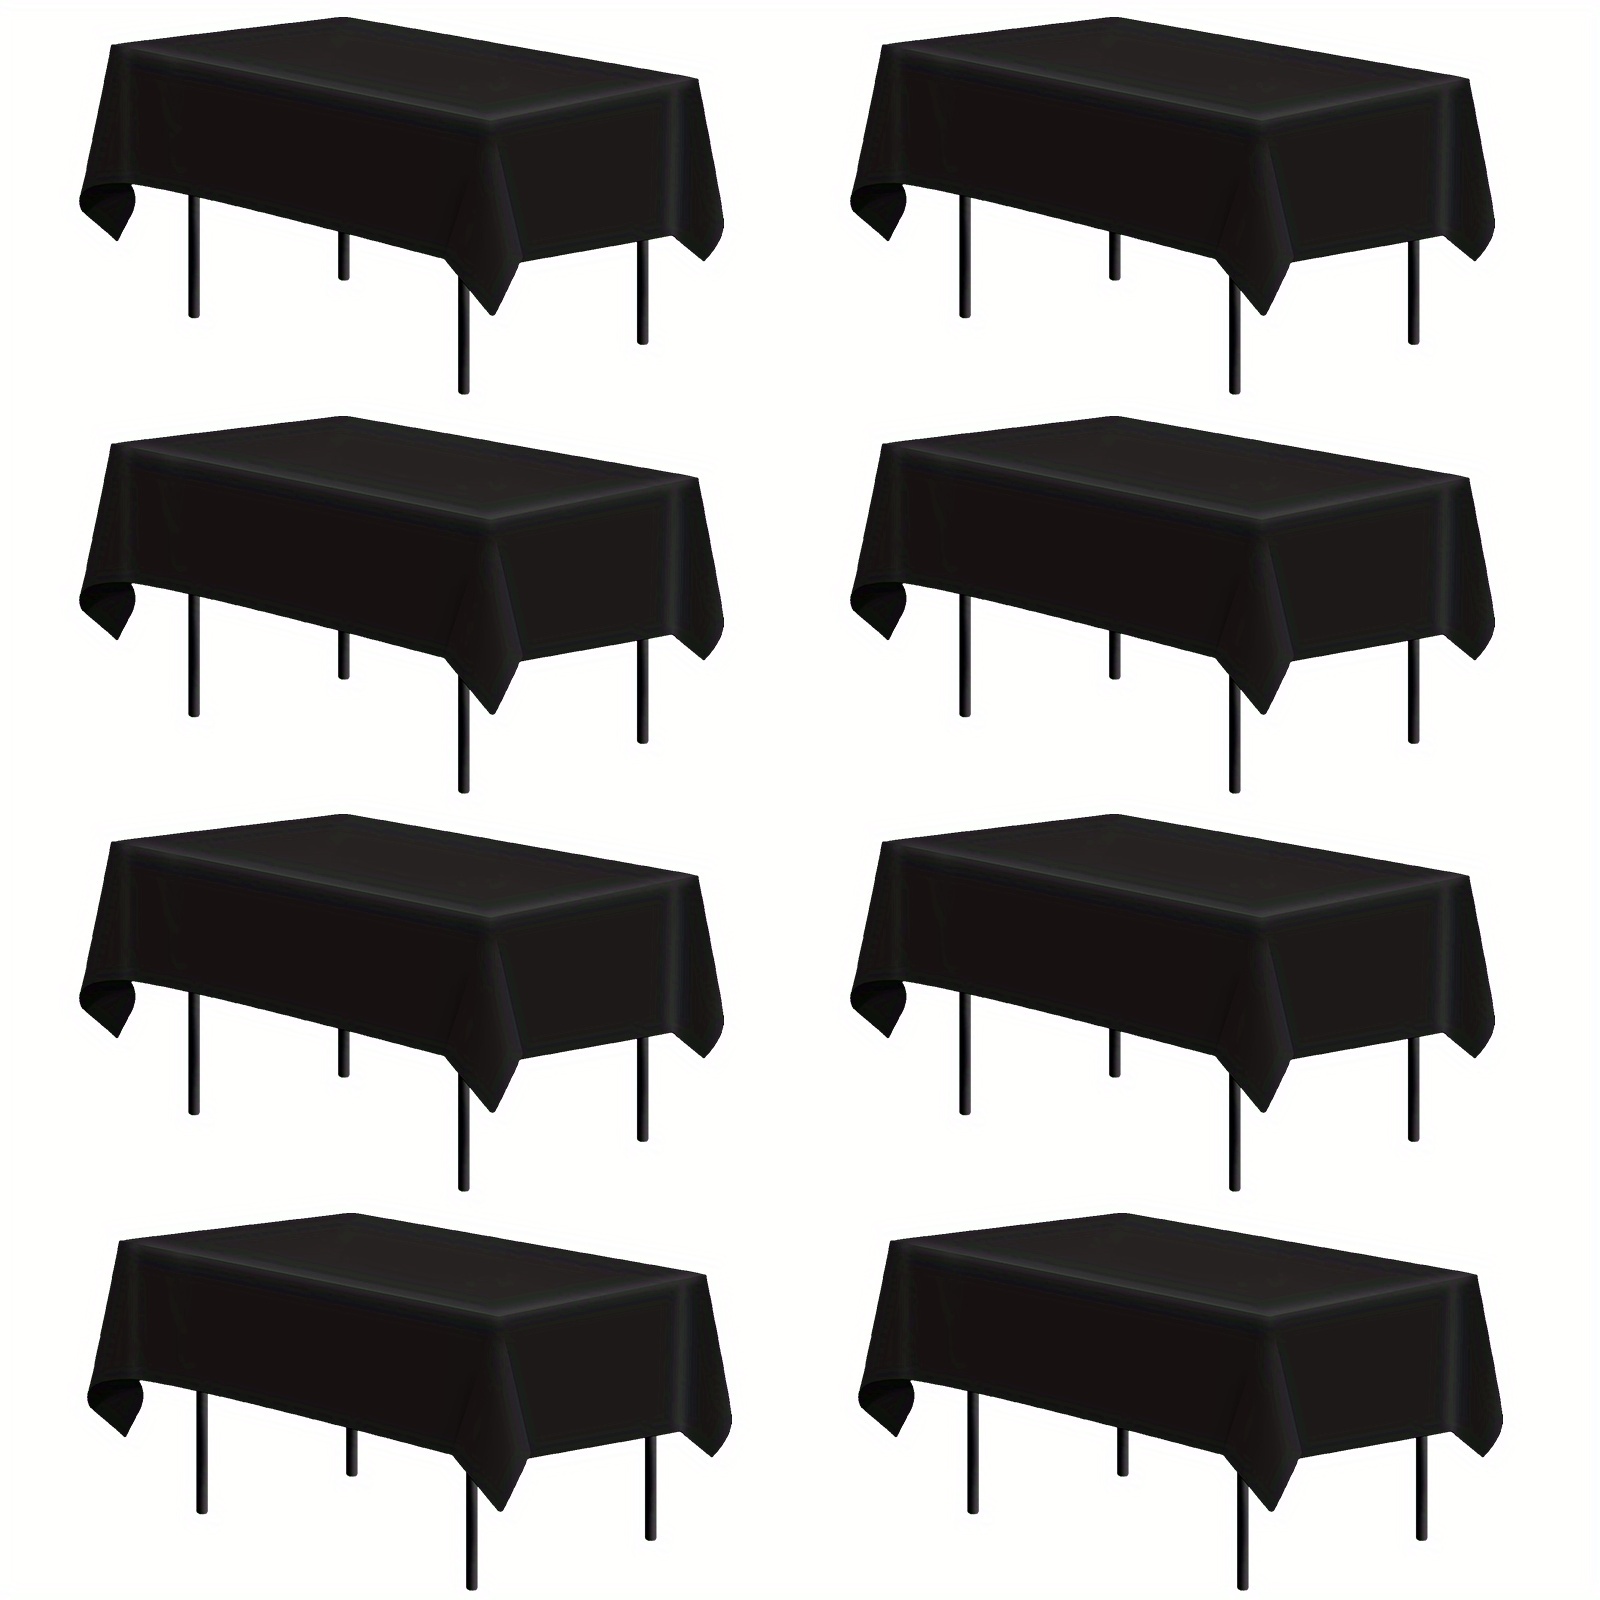 Cubierta de mesa rectangular de spandex a rayas en blanco y negro